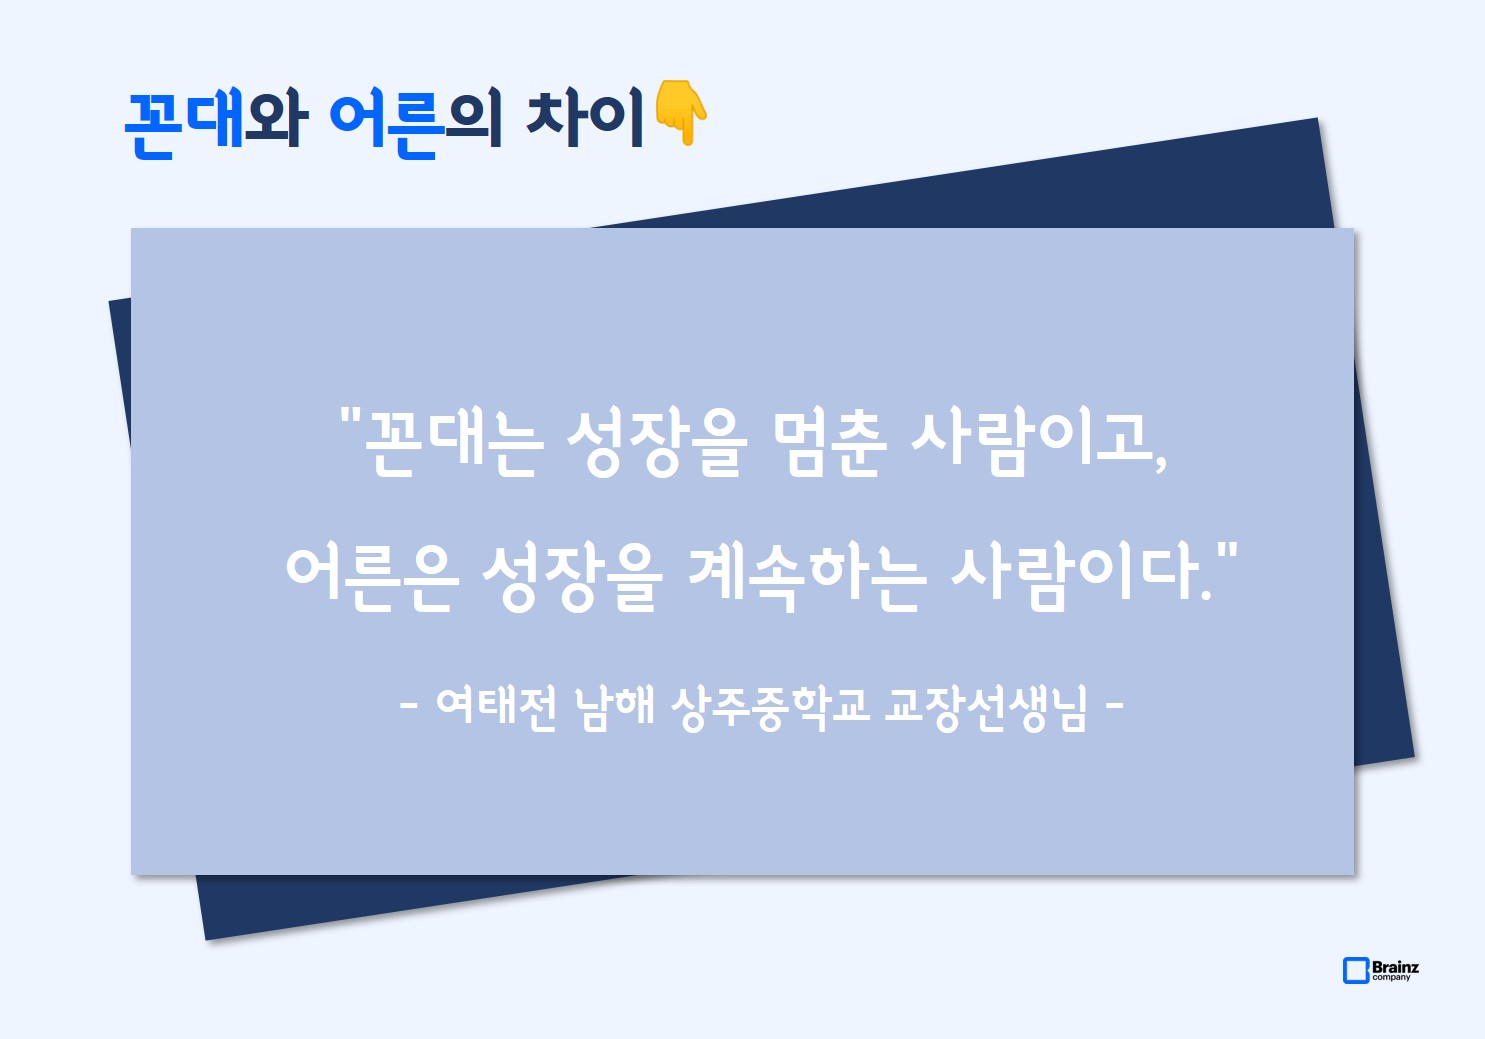 브레인즈컴퍼니 행복한 회사 만들기 조직문화 TF, YB(Young Brainz) 2기, 꼰대 명언